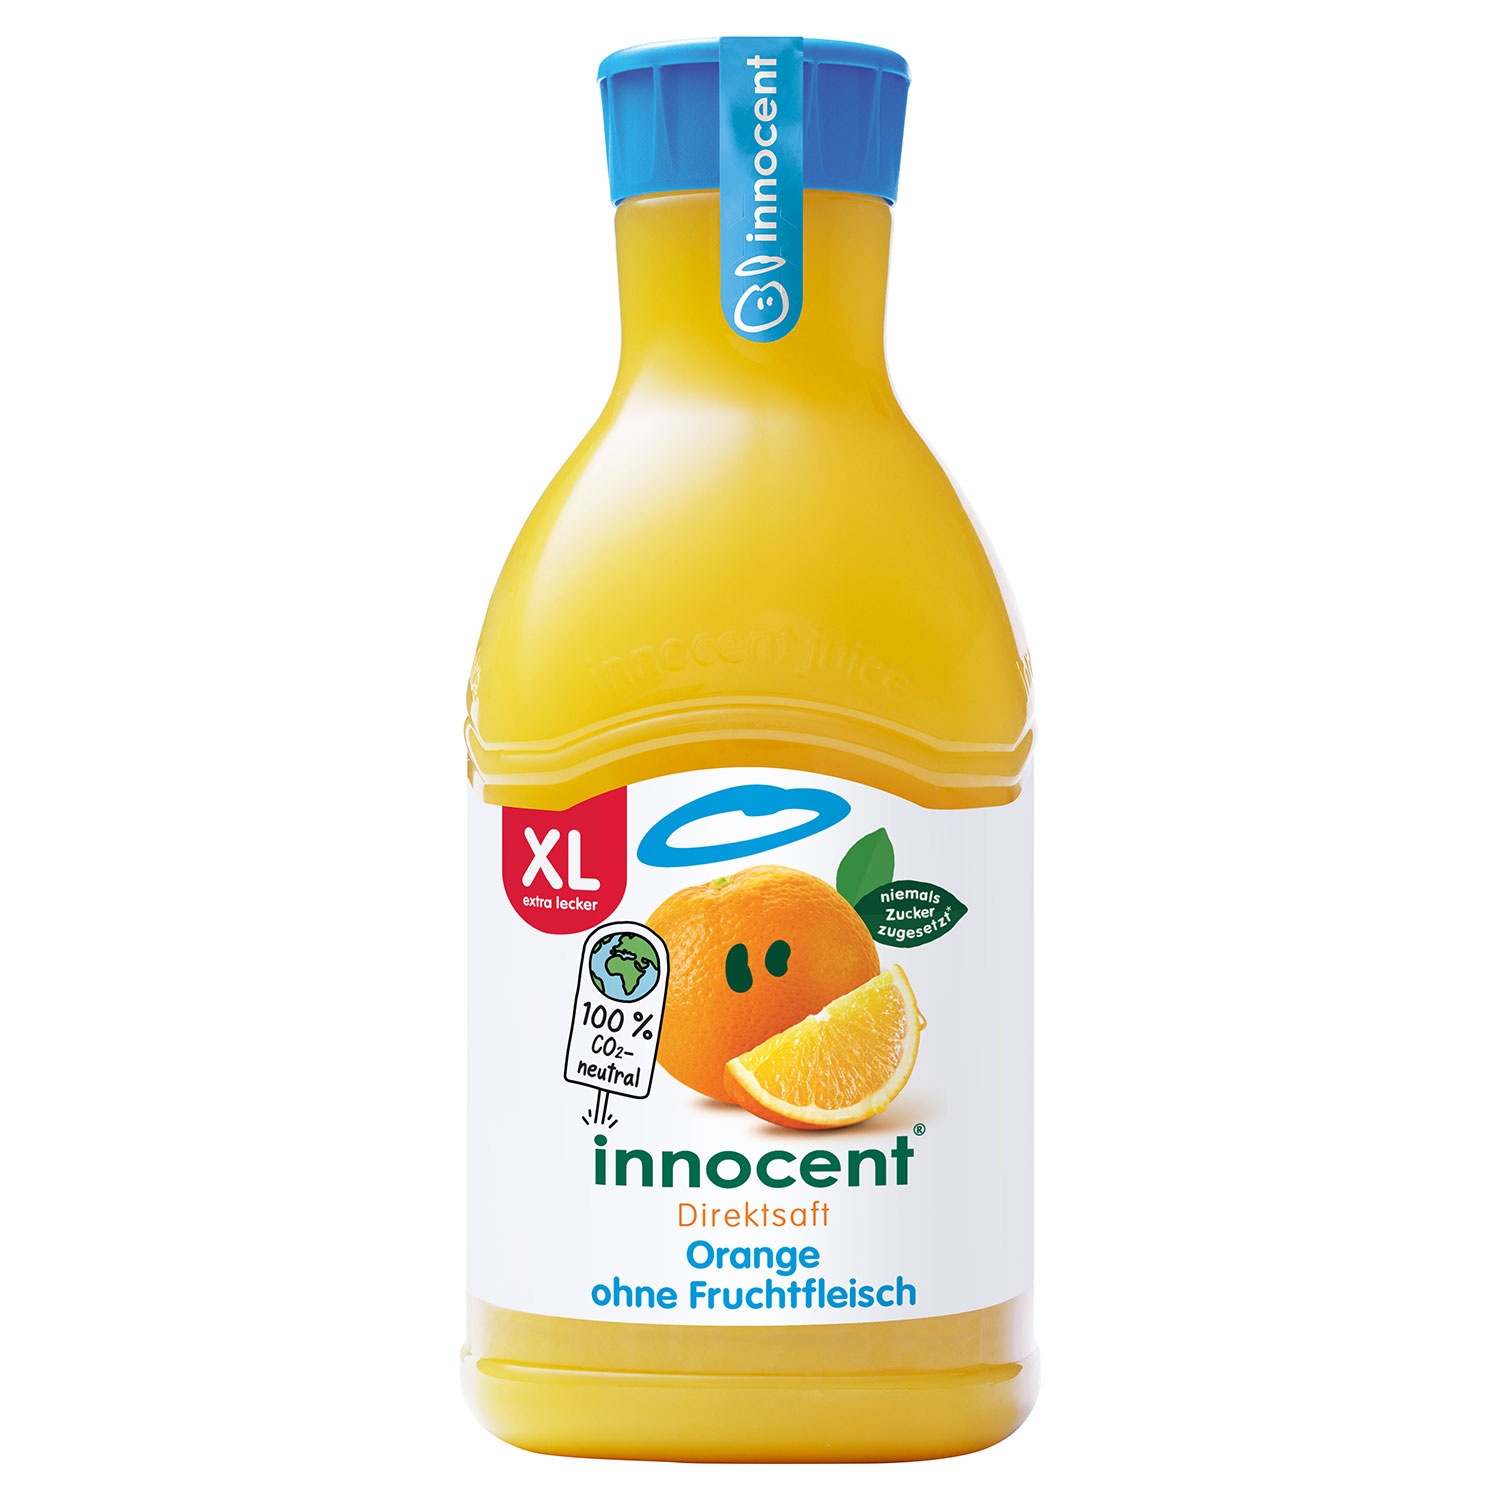 INNOCENT Orangensaft ohne Fruchtfleisch XL 1,35 l